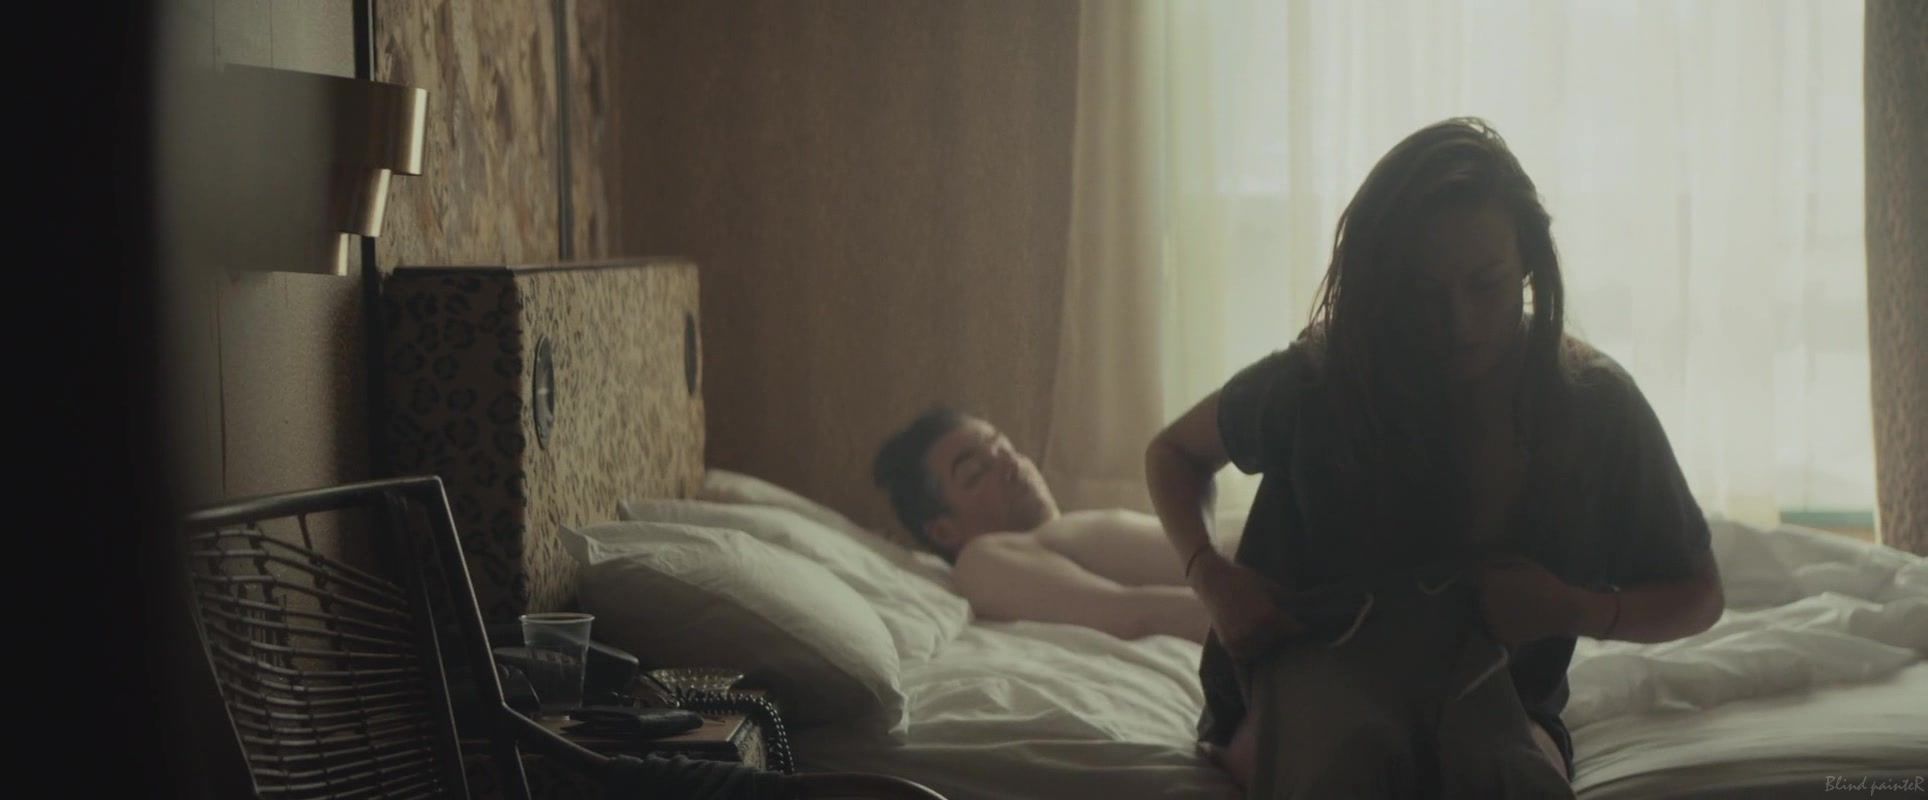 Tranny Sex Olivia Wilde nude - Meadowland (2015) Hidden